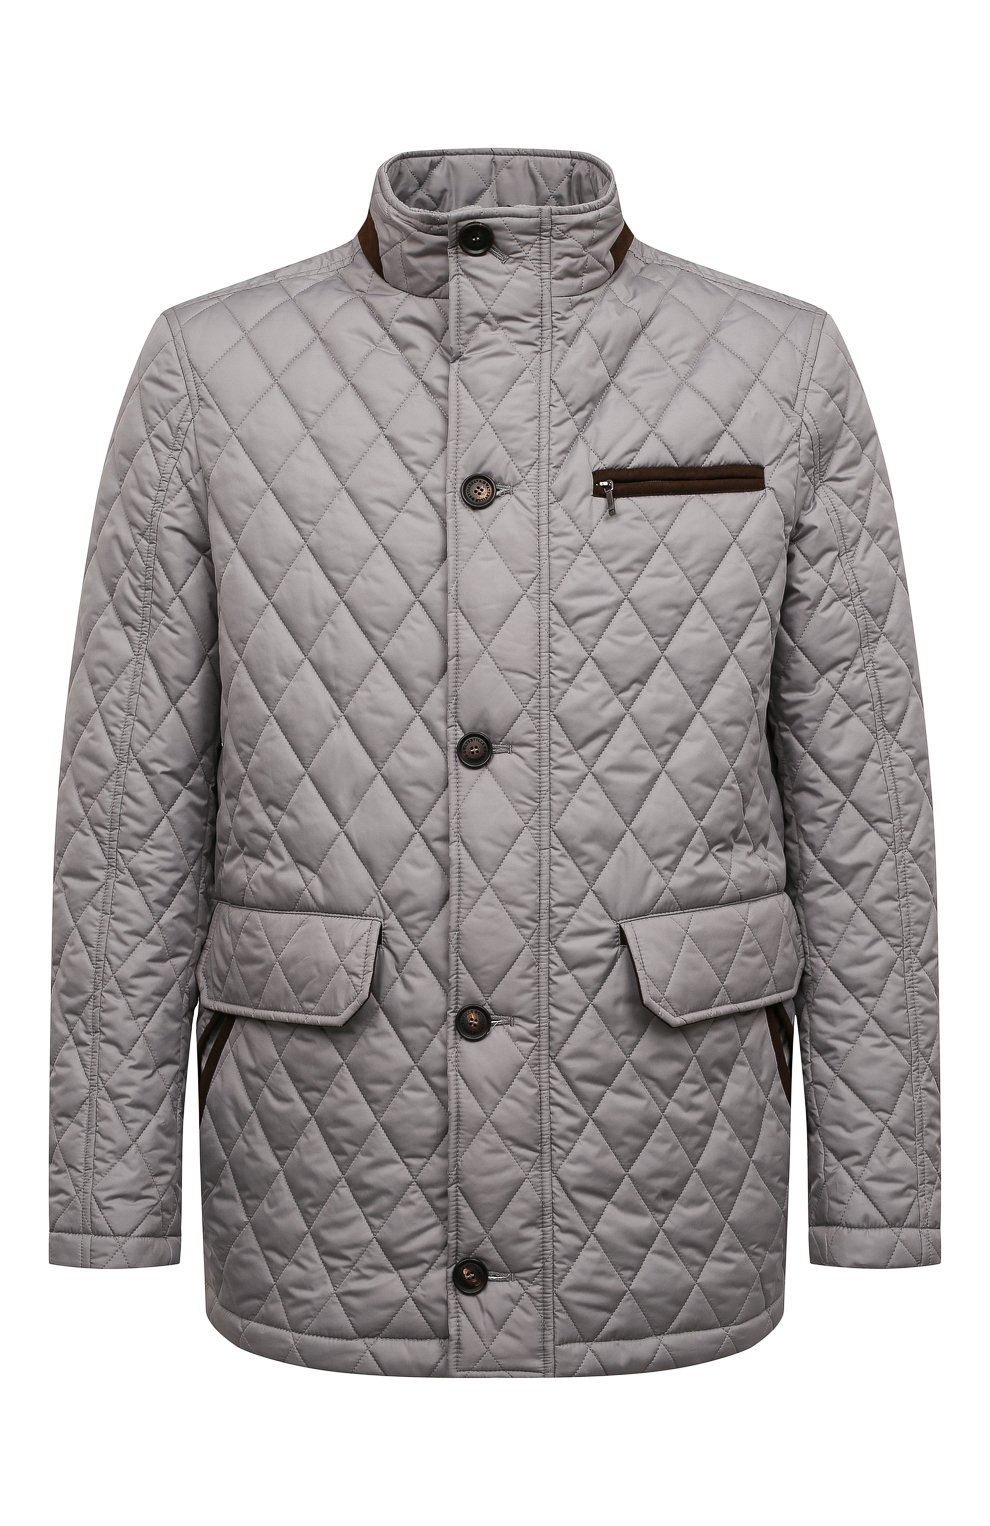 Мужская утепленная куртка WATERVILLE серого цвета, арт. AIDEN/TS1/650 | Фото 1 (Кросс-КТ: Куртка; Рукава: Длинные; Материал внешний: Синтетический материал; Мужское Кросс-КТ: утепленные куртки; Длина (верхняя одежда): Короткие; Материал подклада: Хлопок; Стили: Кэжуэл)